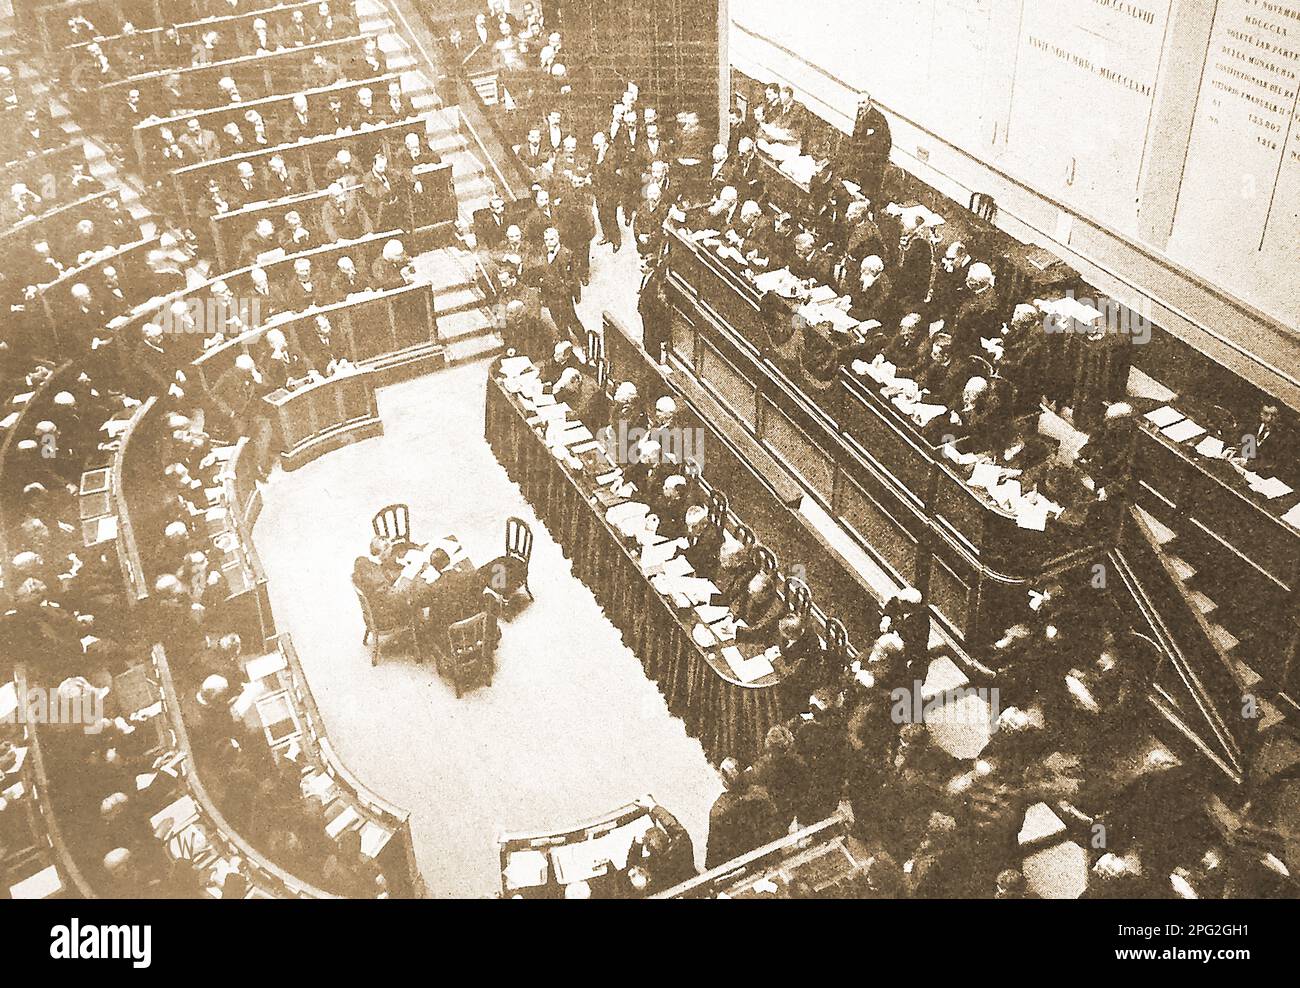 Première Guerre mondiale - Assemblée de la Chambre des députés au Parlement italien - Prima guerra mondiale - un'assemblea della Camera dei deputati nel Parlamento italiano. Banque D'Images